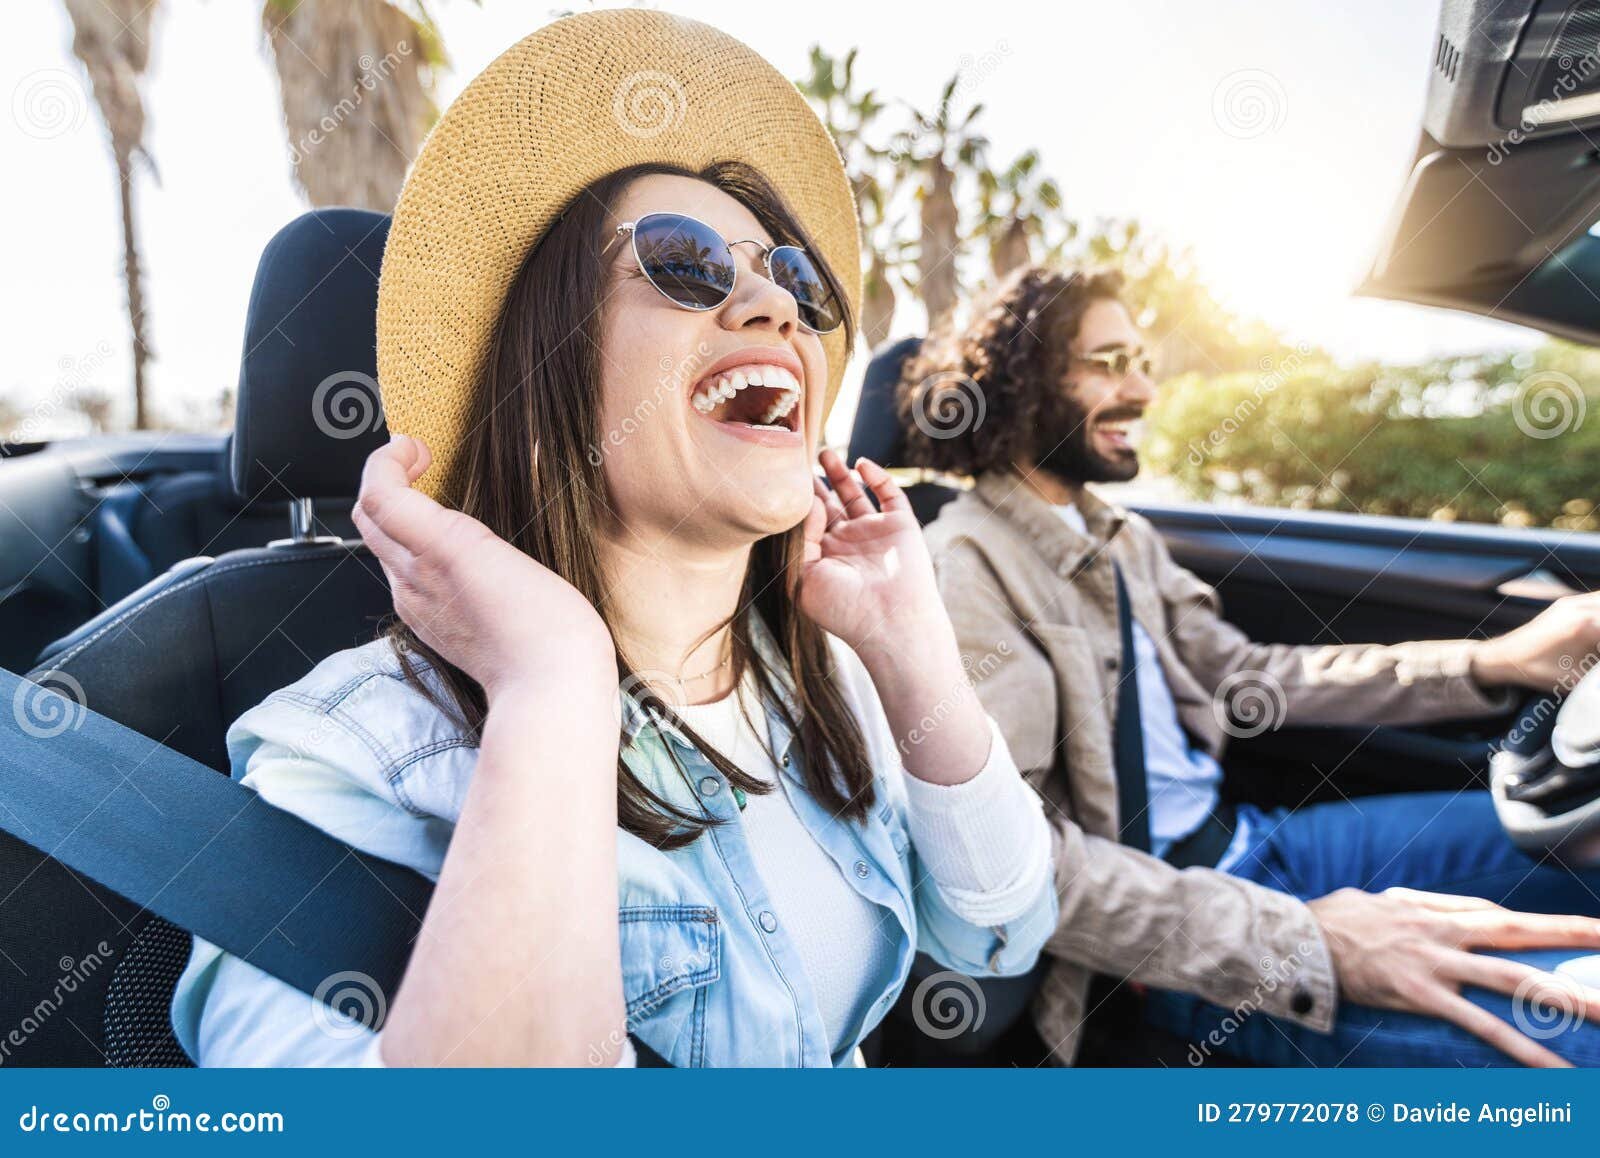 pareja feliz conduciendo un coche alquilado